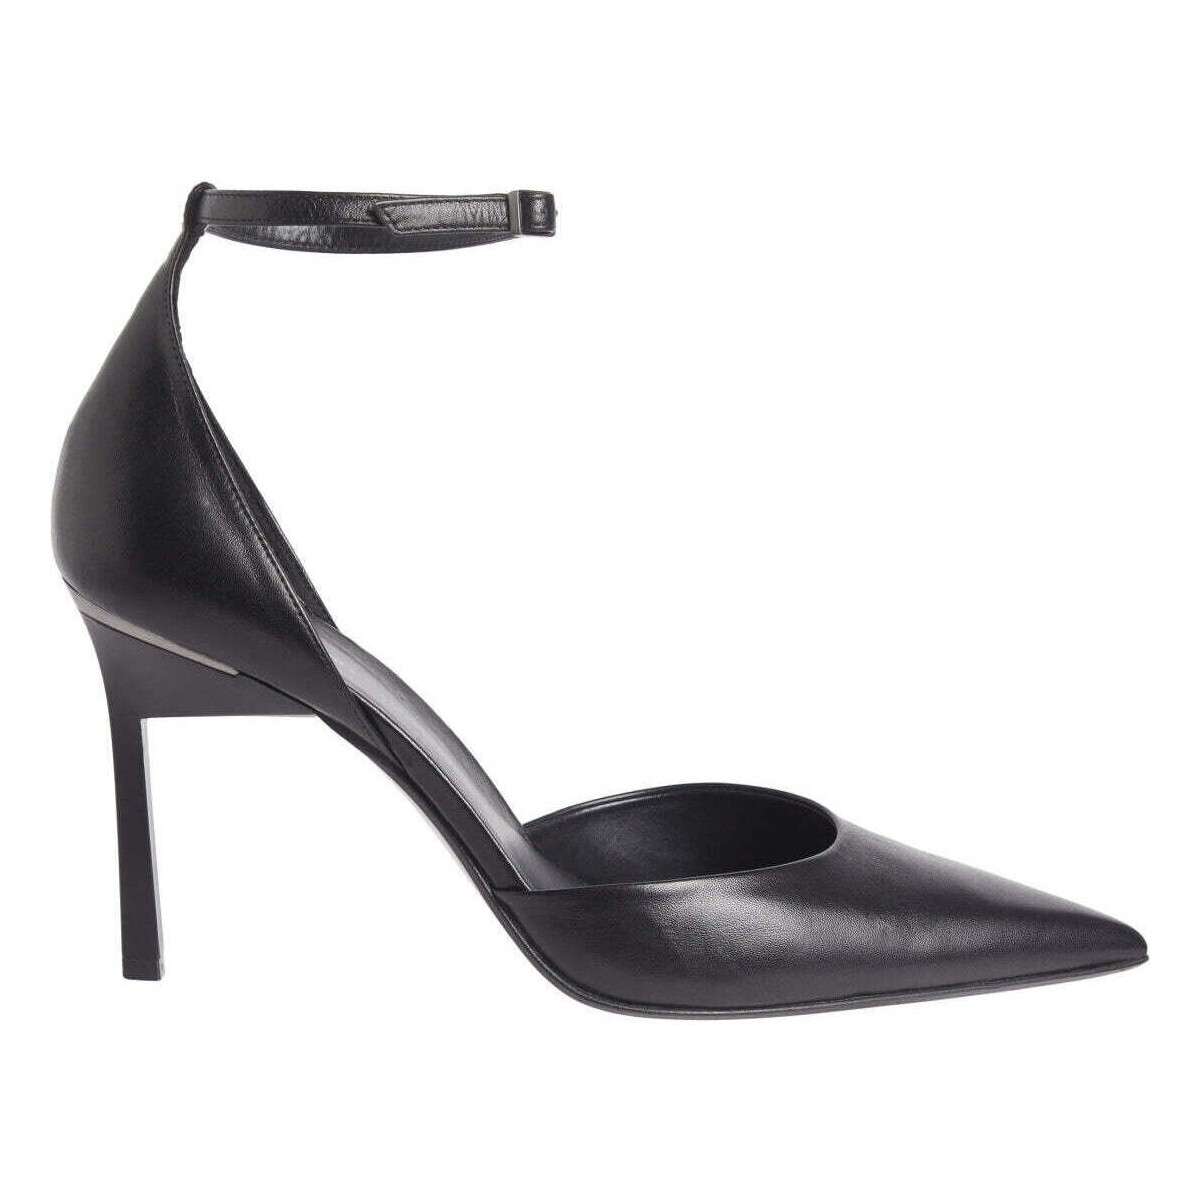 Chaussures Femme Escarpins Calvin Klein Jeans geo stil pump strap Noir